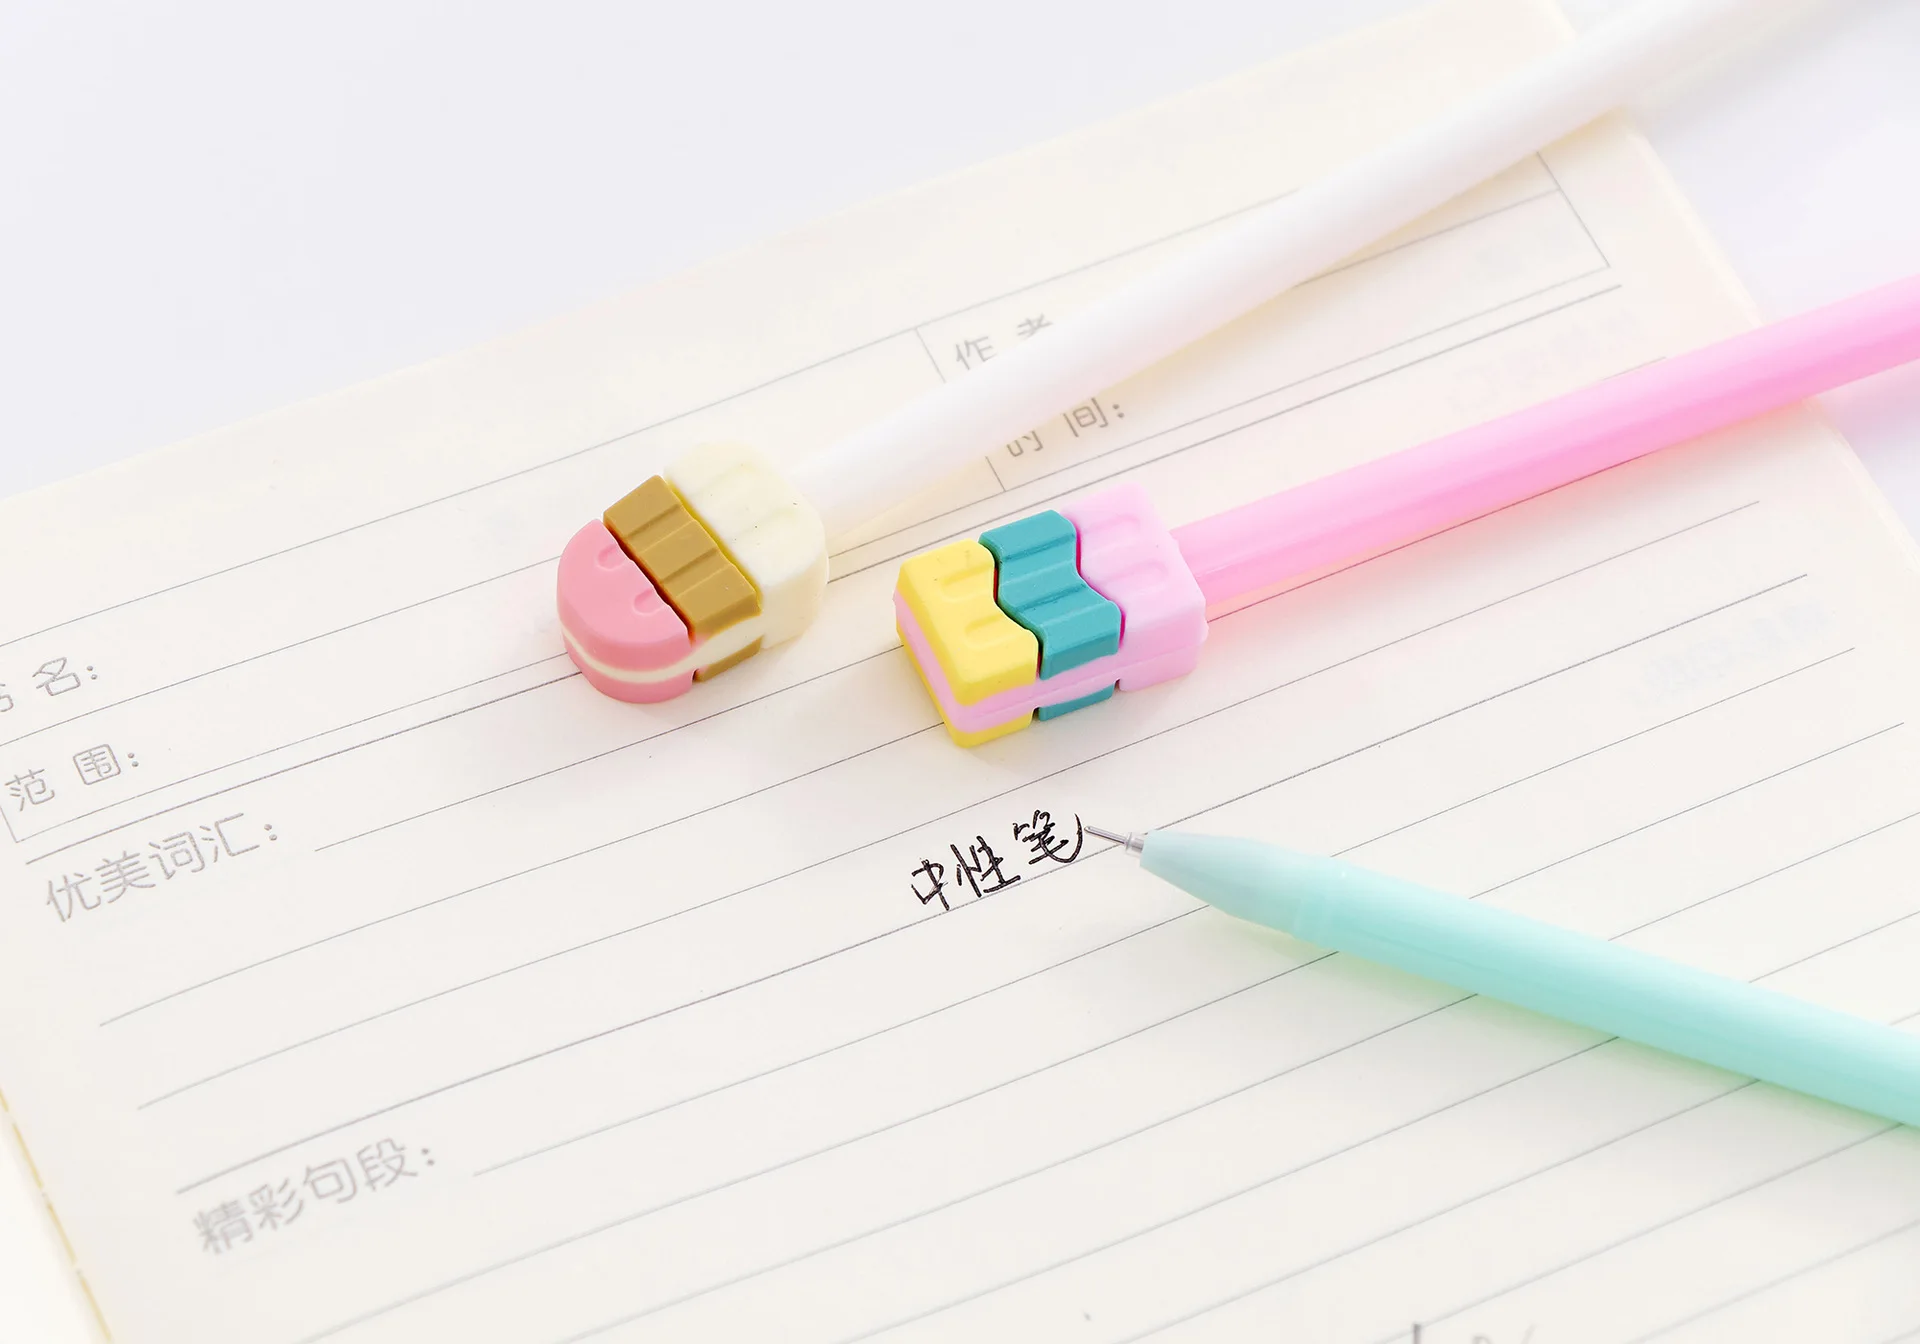 1 шт. милые гелевые ручки с арбузным мороженым для ног, 0,5 мм, детские подарочные ручки для студентов, офисные школьные принадлежности